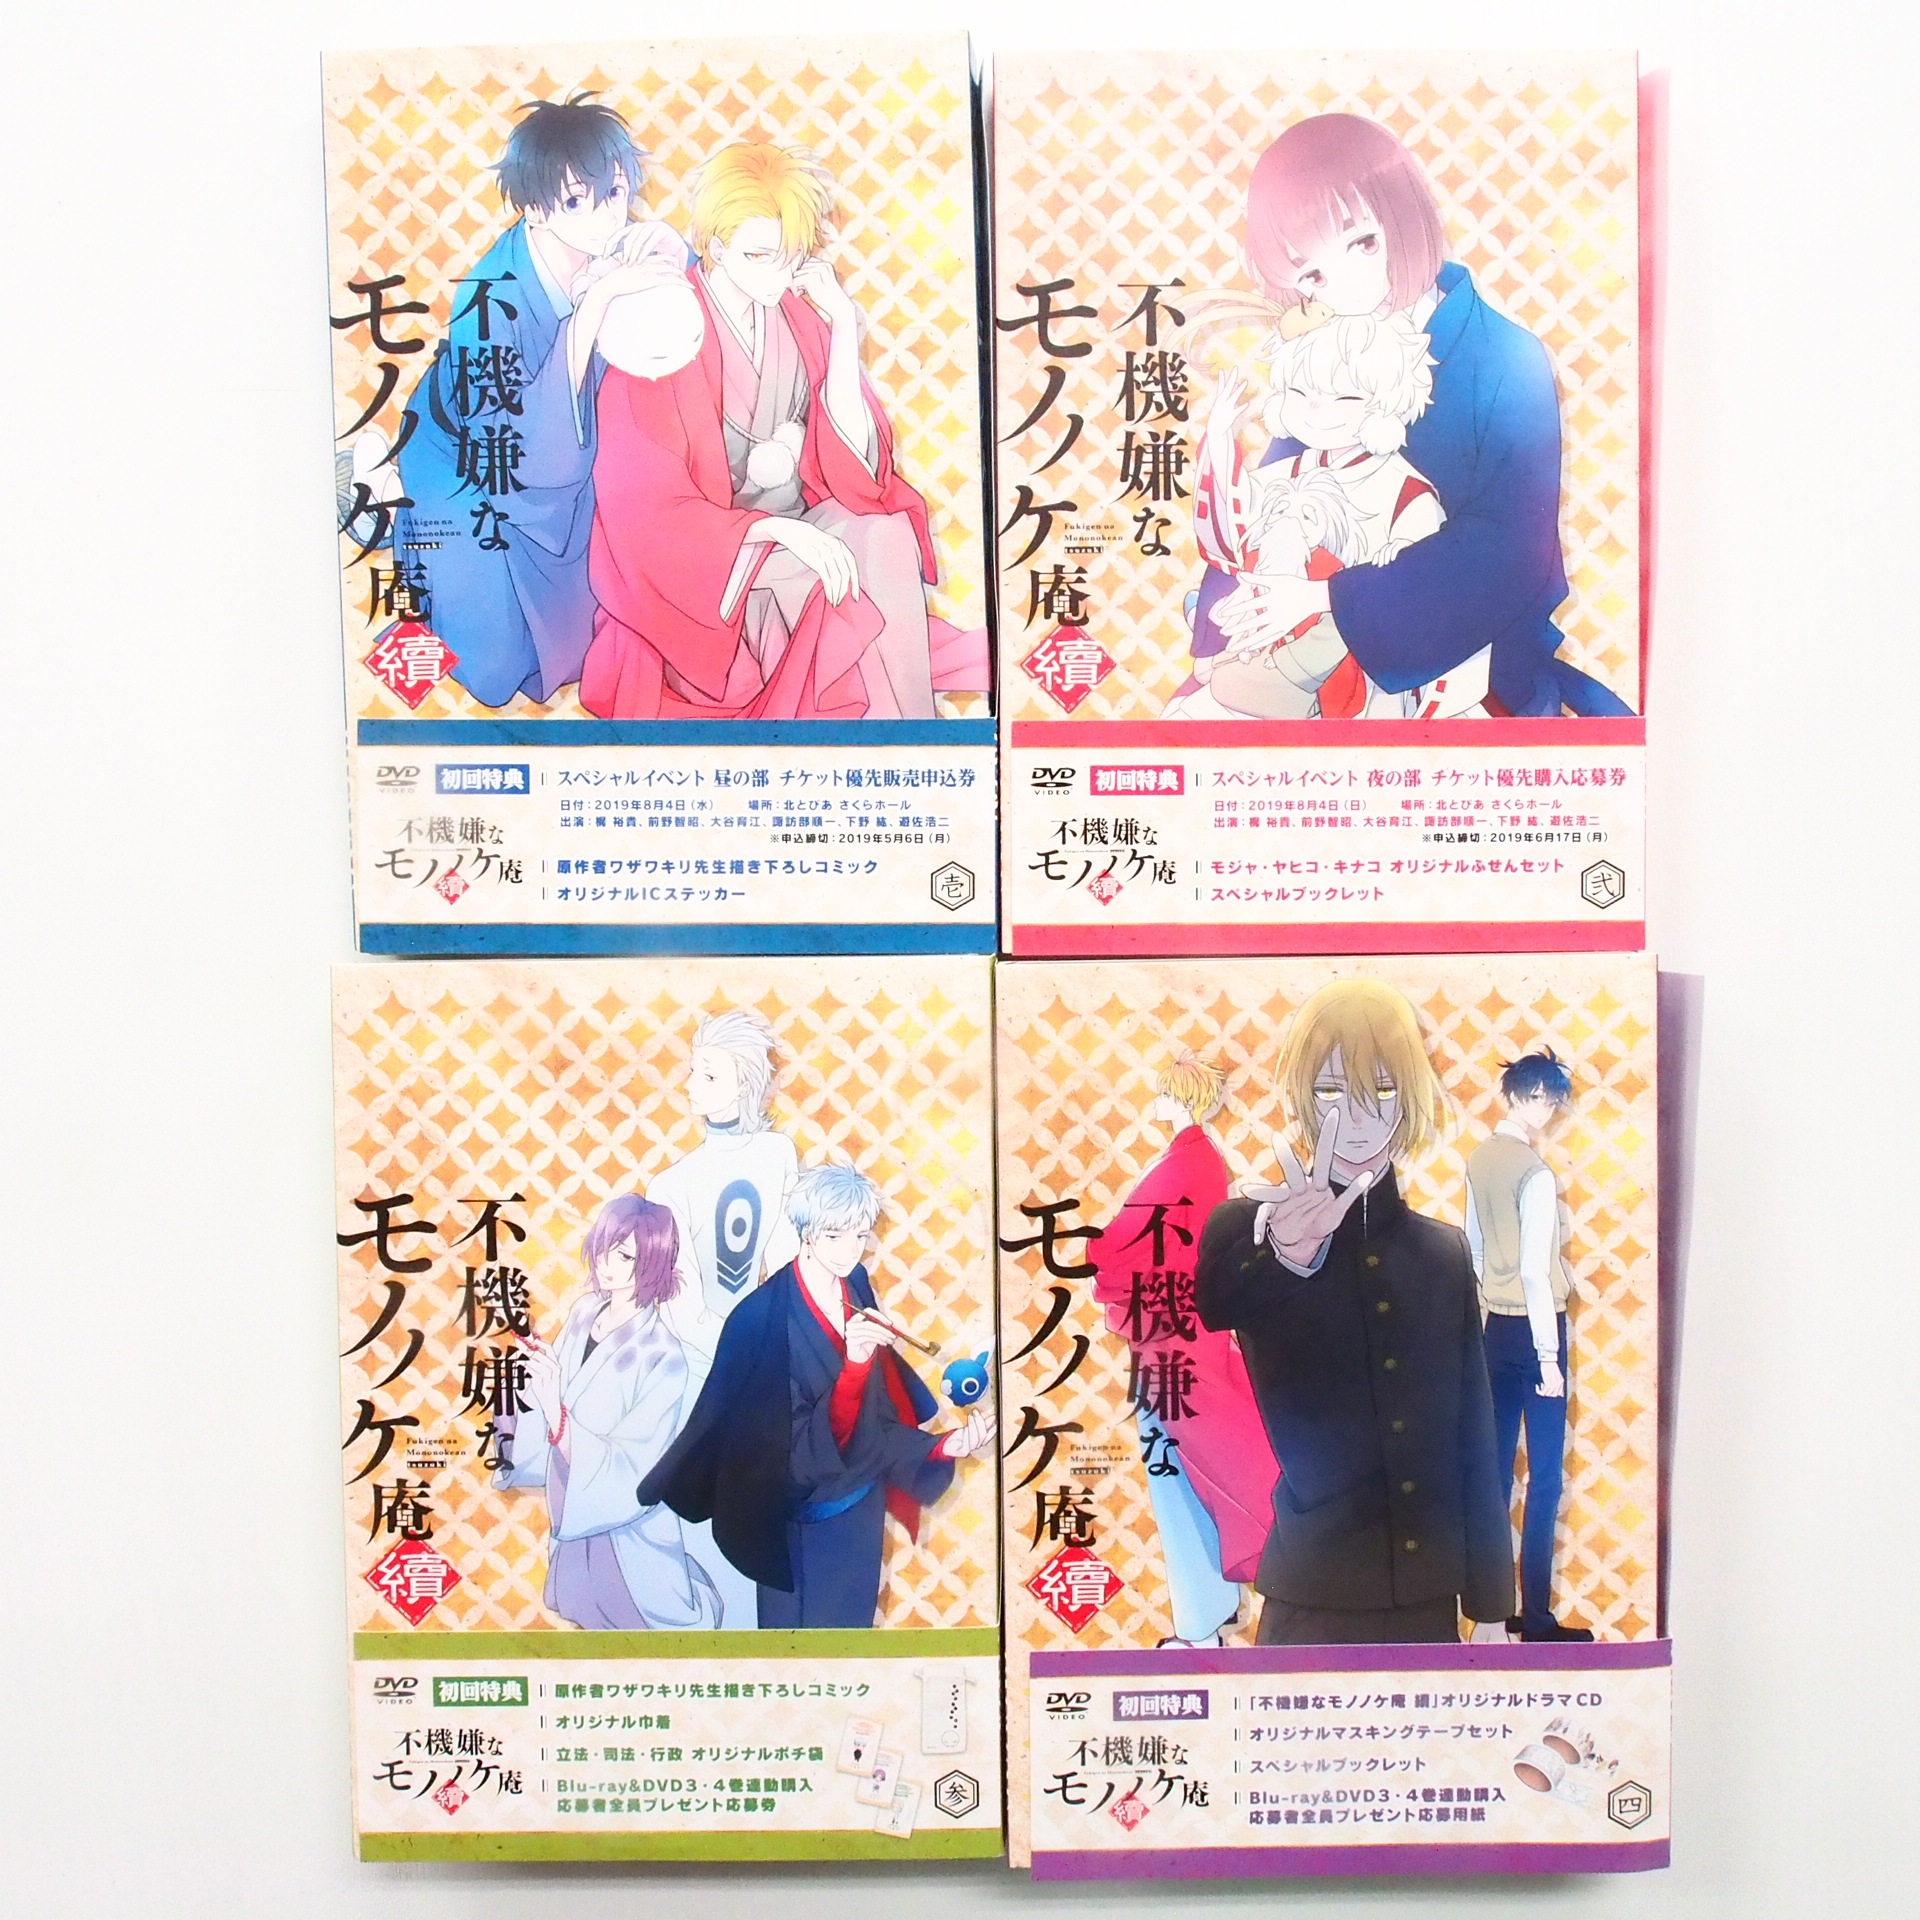 戦え!! イクサー 1 コンプリートコレクション 初回限定版 DVD-BOX 高価 